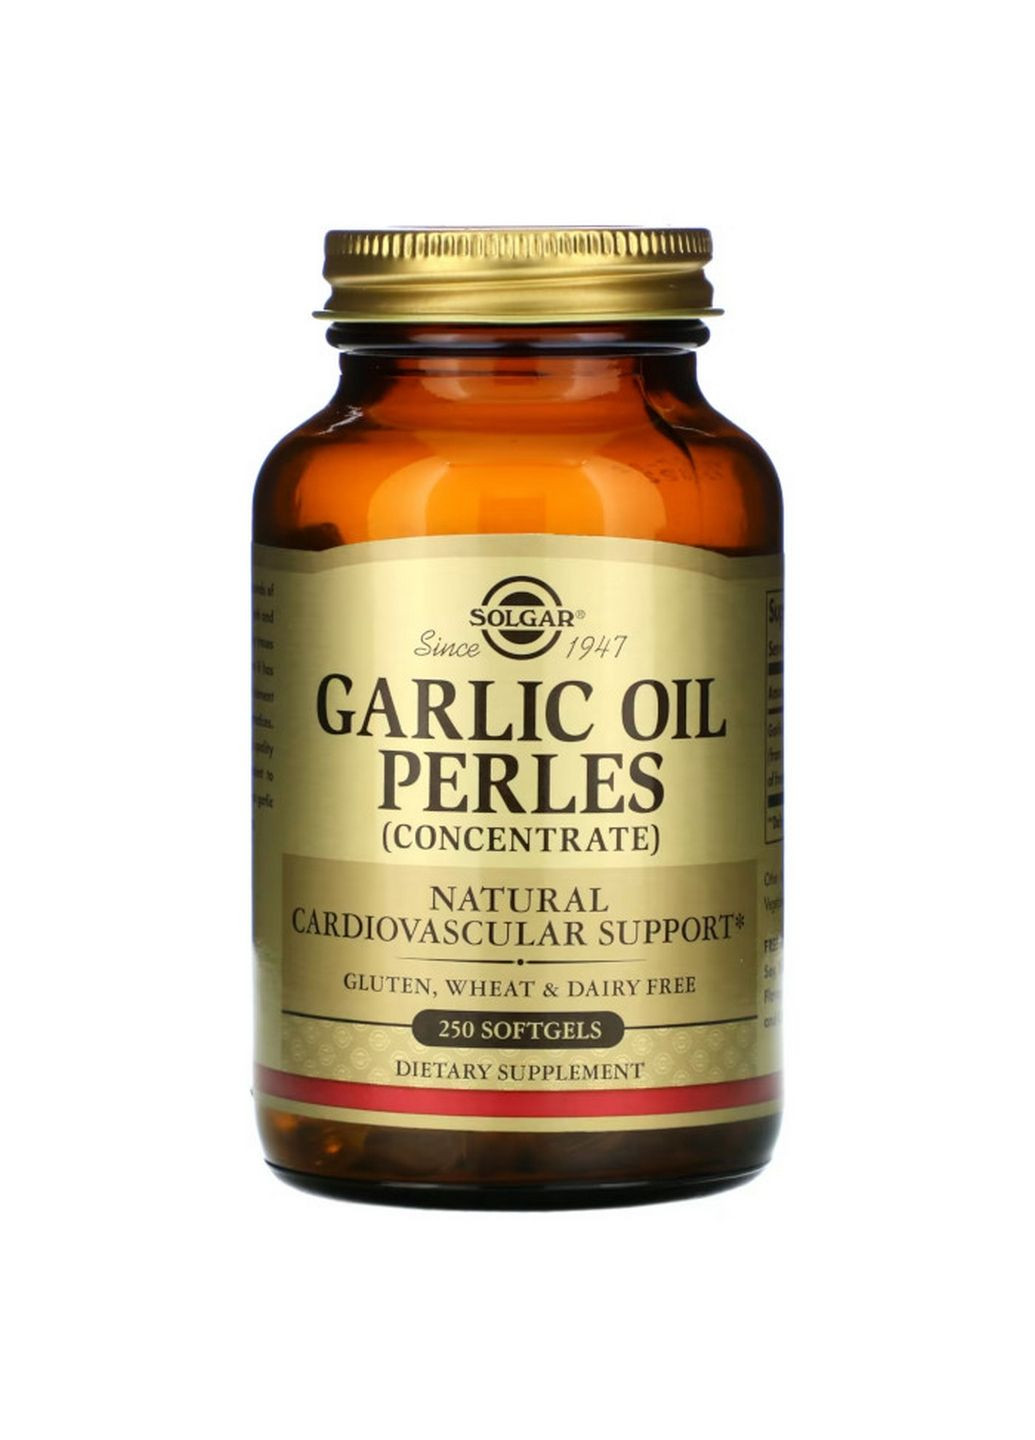 Натуральная добавка Garlic Oil Perles (Concentrate), 250 капсул Solgar (293483025)